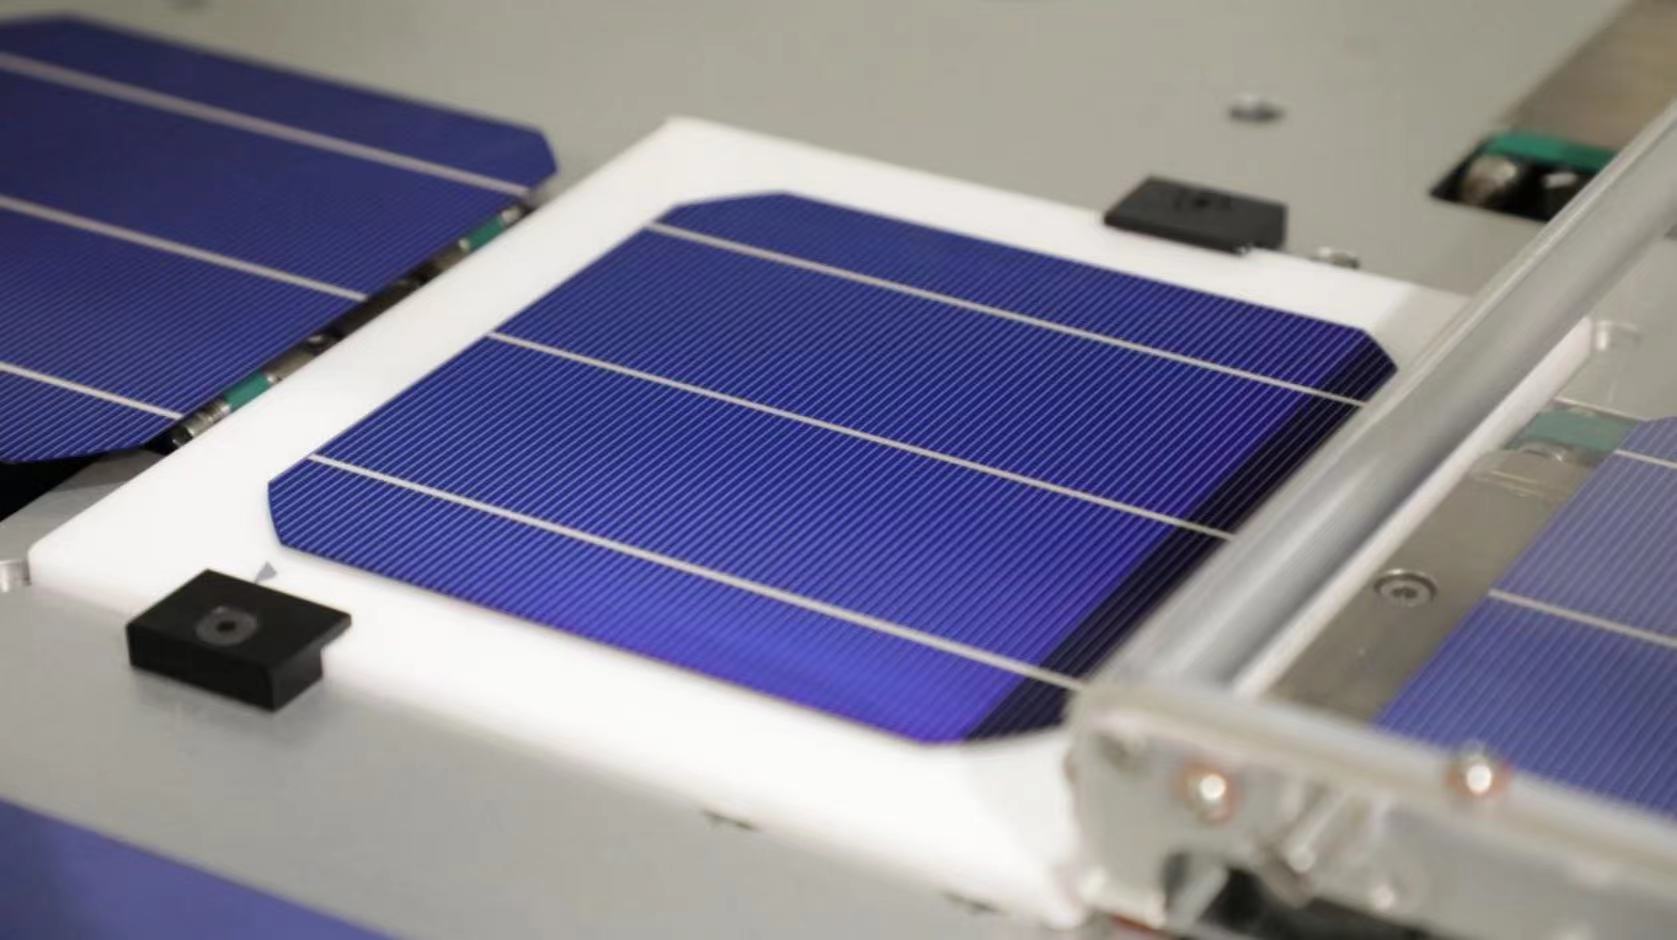 ¡La pasta de plata ayuda a que la célula solar TOPCon mejore la eficiencia en un 0,2%!